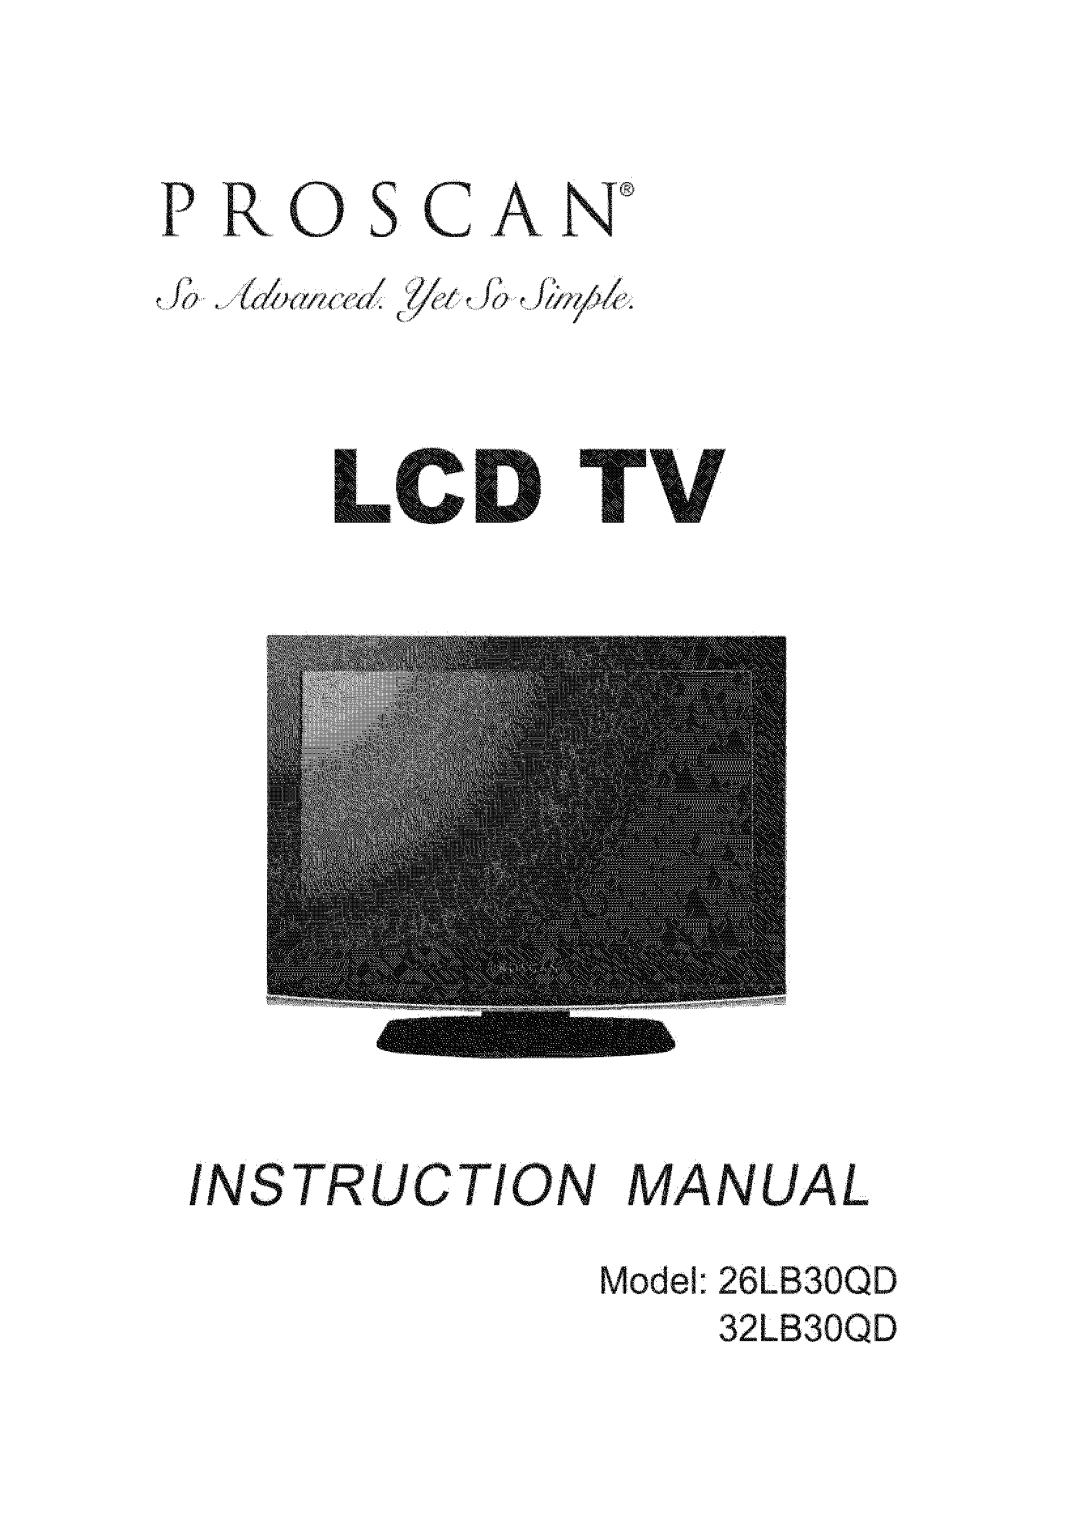 ProScan instruction manual Model 26LB30QD 32LB30QD, Pro C A N, Instruction Manual 